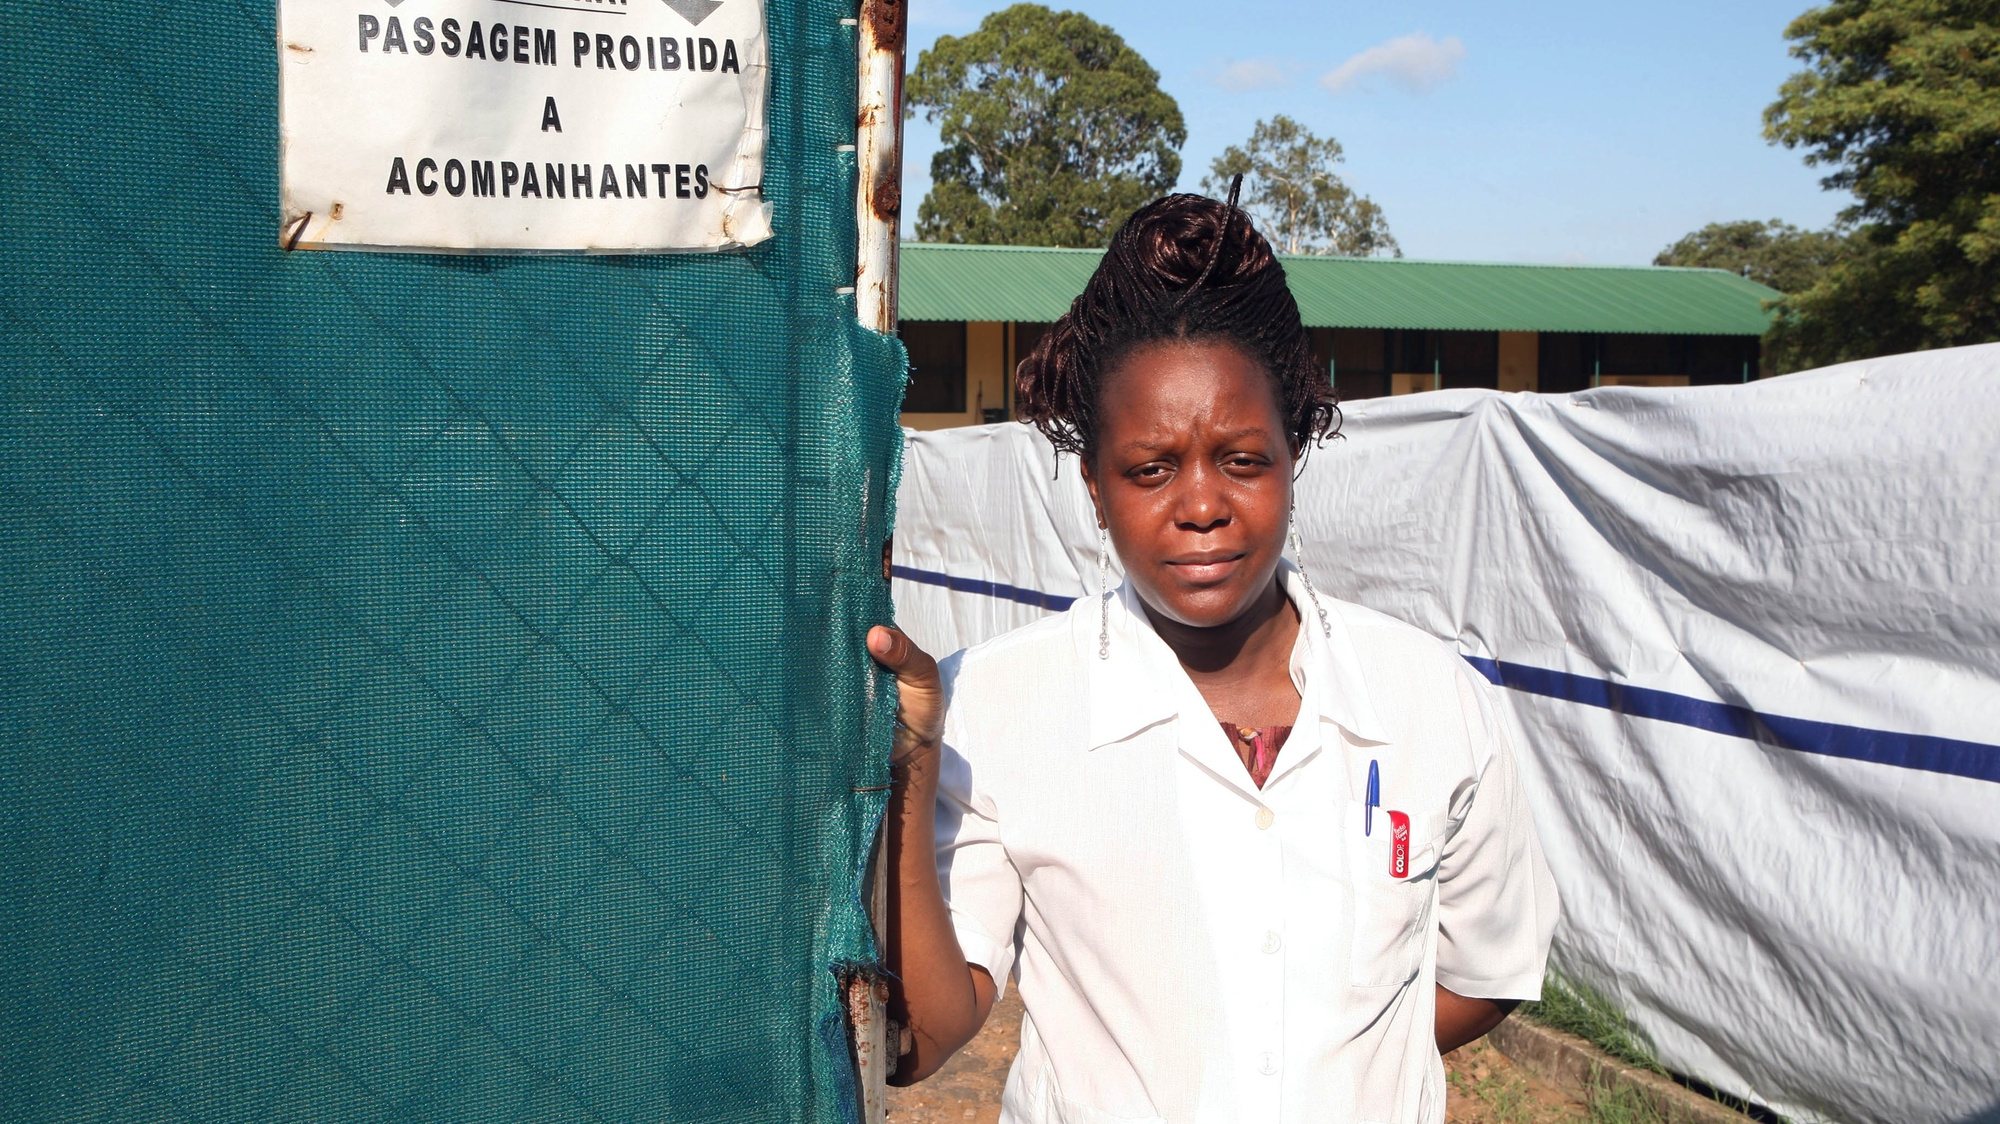 Alice Magaia, Directora  de Saúde da Cidade de Maputo, no Centro de Cólera no Hospital de Mavalane, Maputo, a 10 de Janeiro de 2009. No último mês registaram-se 55 casos de Cólera na Província de Maputo.   Pedro Sá da Bandeira/Lusa